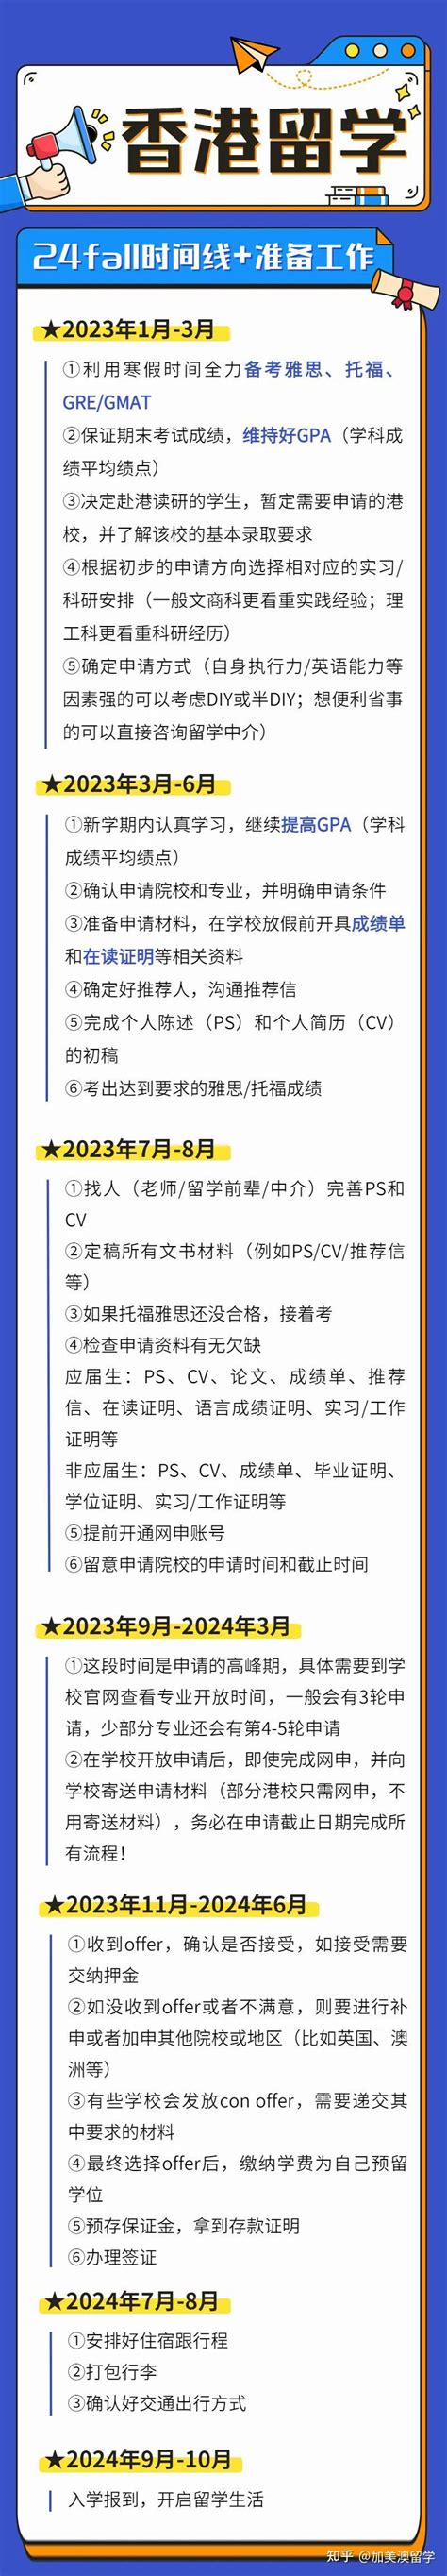 2020年香港留学申请时间规划 - 知乎